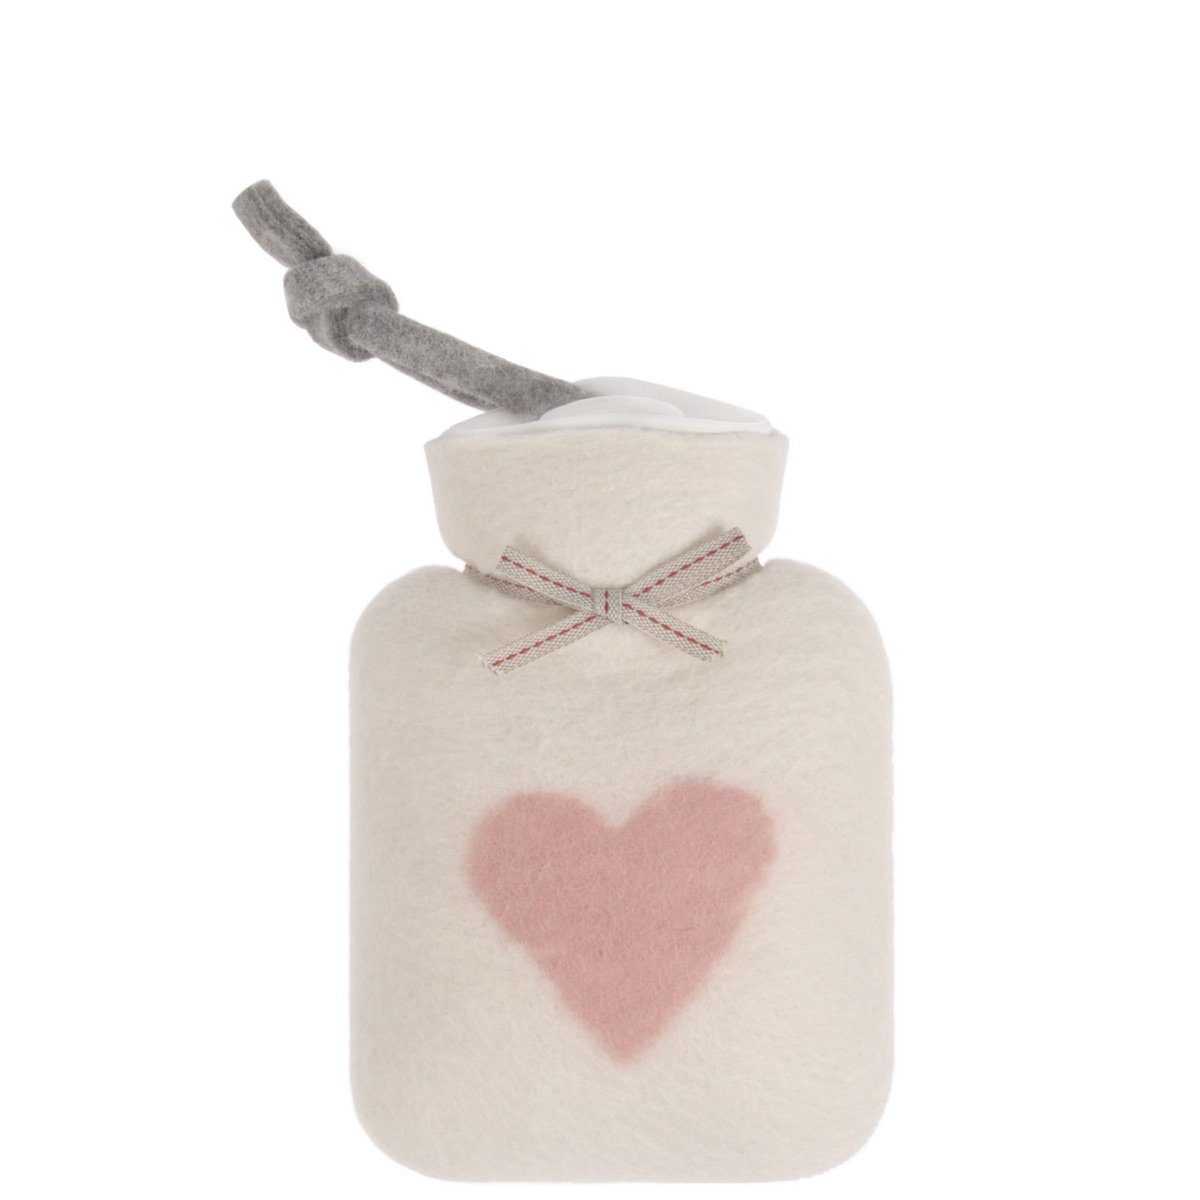 Dorothee Lehnen Wärmflasche mit Bezug aus 100% Merinowolle; Miniwärmflasche / Kinderwärmflasche / Handwärmer in Weiß mit Herz Motiv in Rosa; Made in Germany